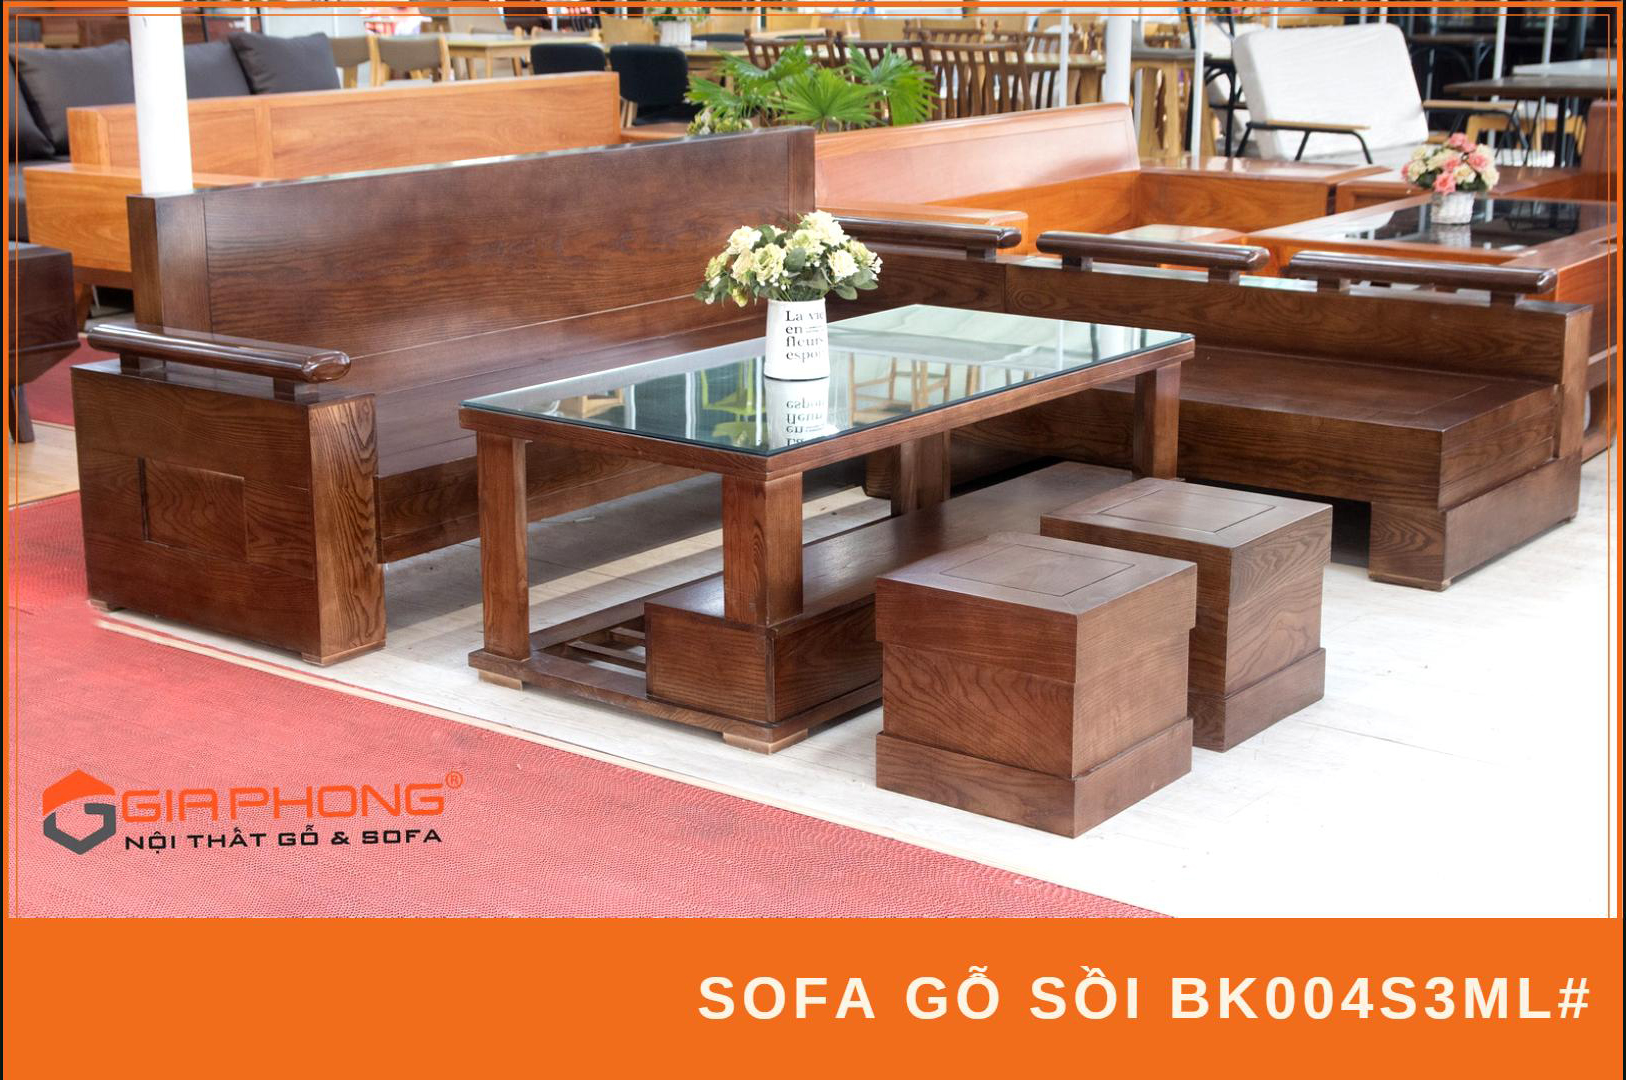 Bộ bàn ghế gỗ nhỏ gọn là lựa chọn tuyệt vời cho những không gian phòng khách nhỏ. Bạn sẽ không phải lo lắng về mức giá bởi chúng rất phù hợp với ngân sách của bạn. Với chất liệu gỗ bền đẹp và thiết kế tối giản, bộ bàn ghế này sẽ khiến cho căn phòng của bạn trở nên hoàn hảo hơn.